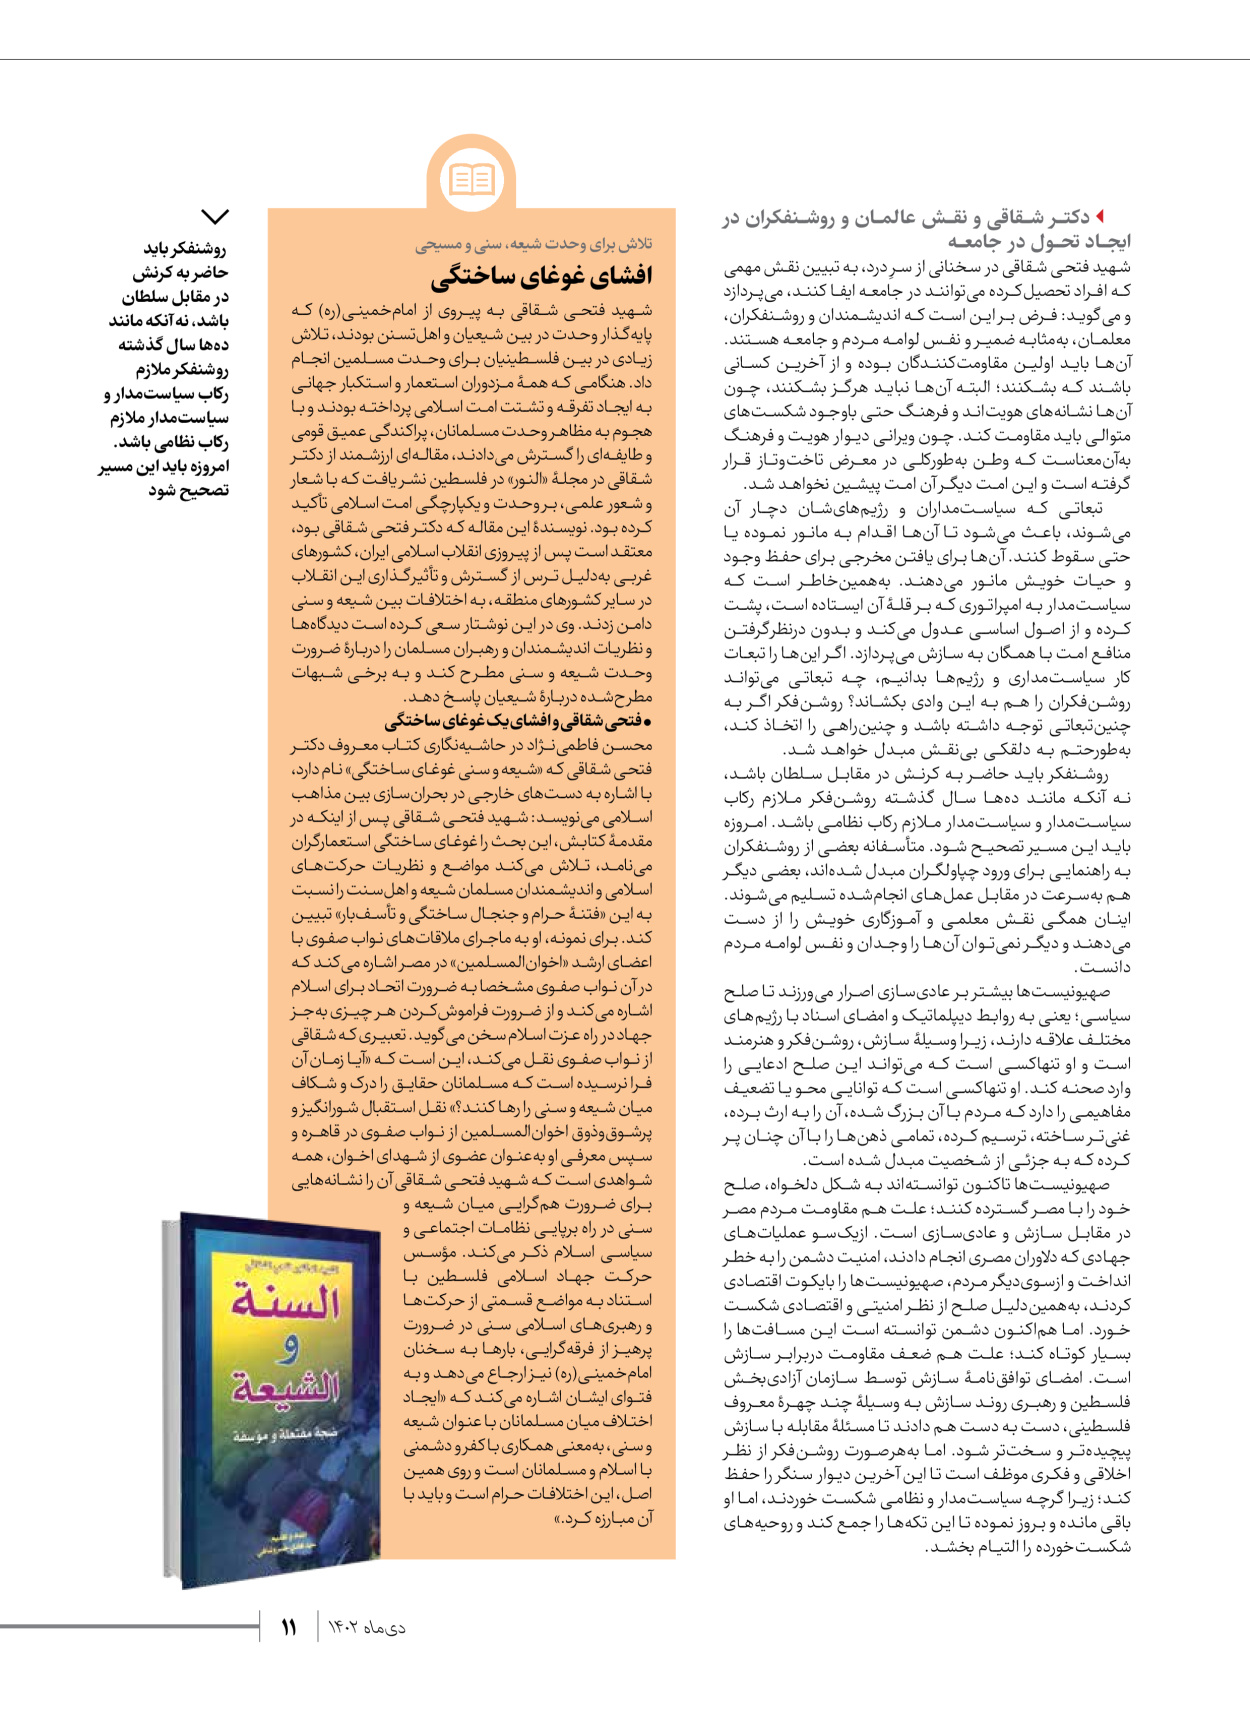 روزنامه ایران - ویژه نامه شهدای قدس ۲ - ۲۳ دی ۱۴۰۲ - صفحه ۱۱